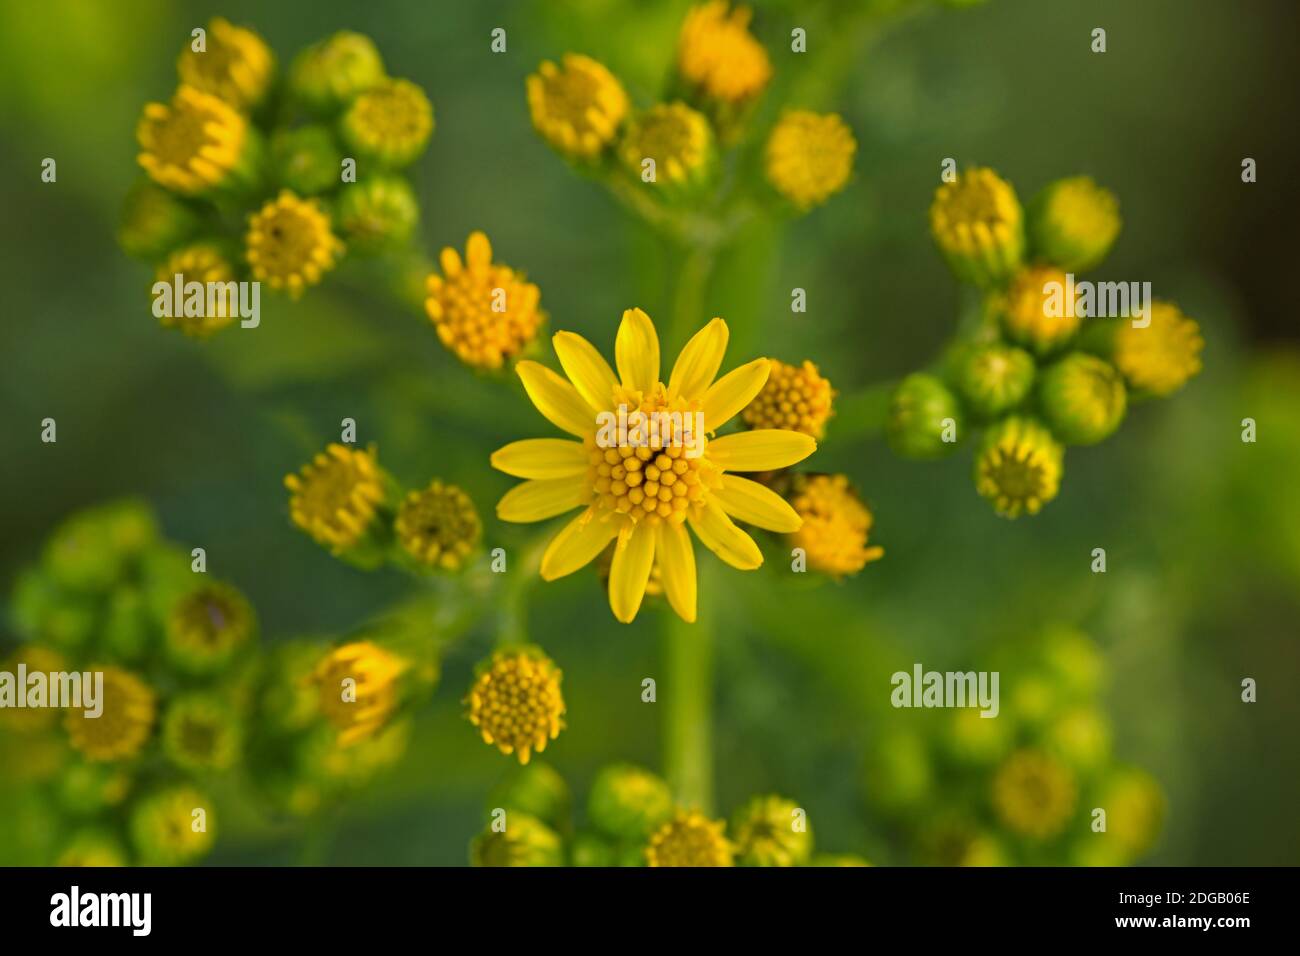 Common ragwort Stock Photo